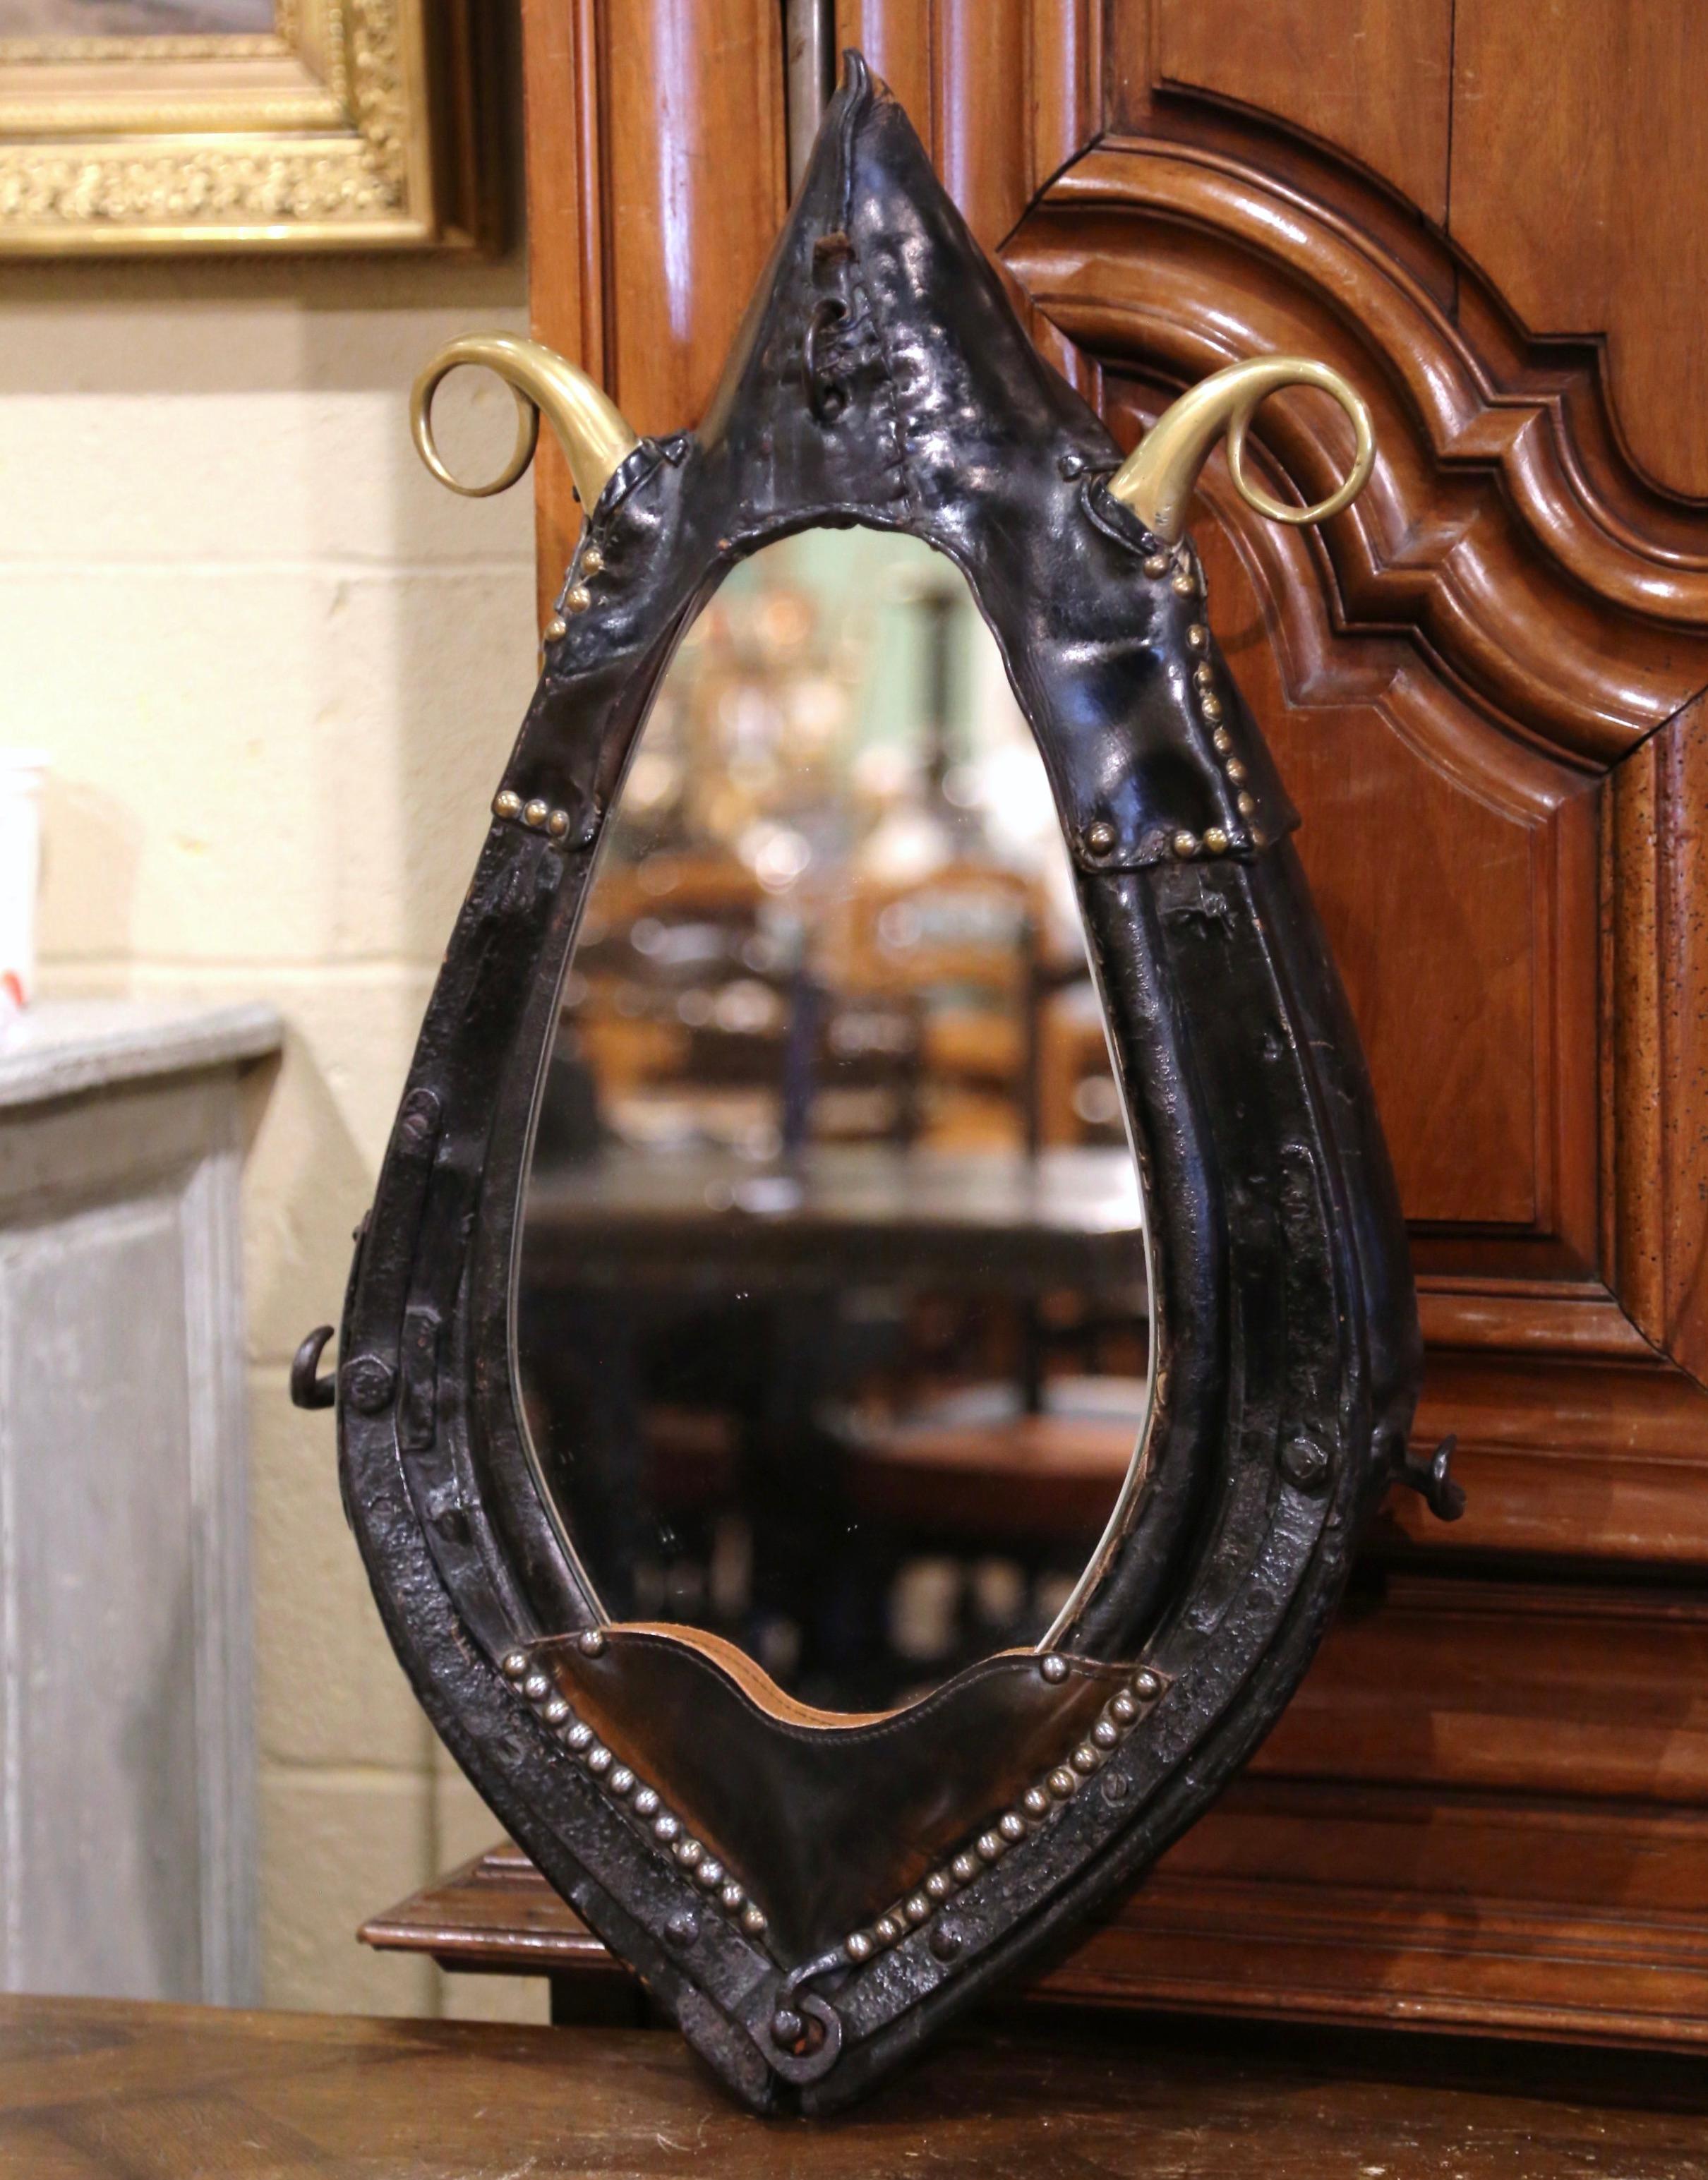 Der an der Wand hängende Spiegel ist ein einzigartiger Fund für ein Ranchhaus oder eine Jagdhütte. Der Spiegel wird von einem schönen, antiken Pferdekragen aus Frankreich um 1880 eingerahmt. Das Halsband ist aus Holz geschnitzt und mit Leder und